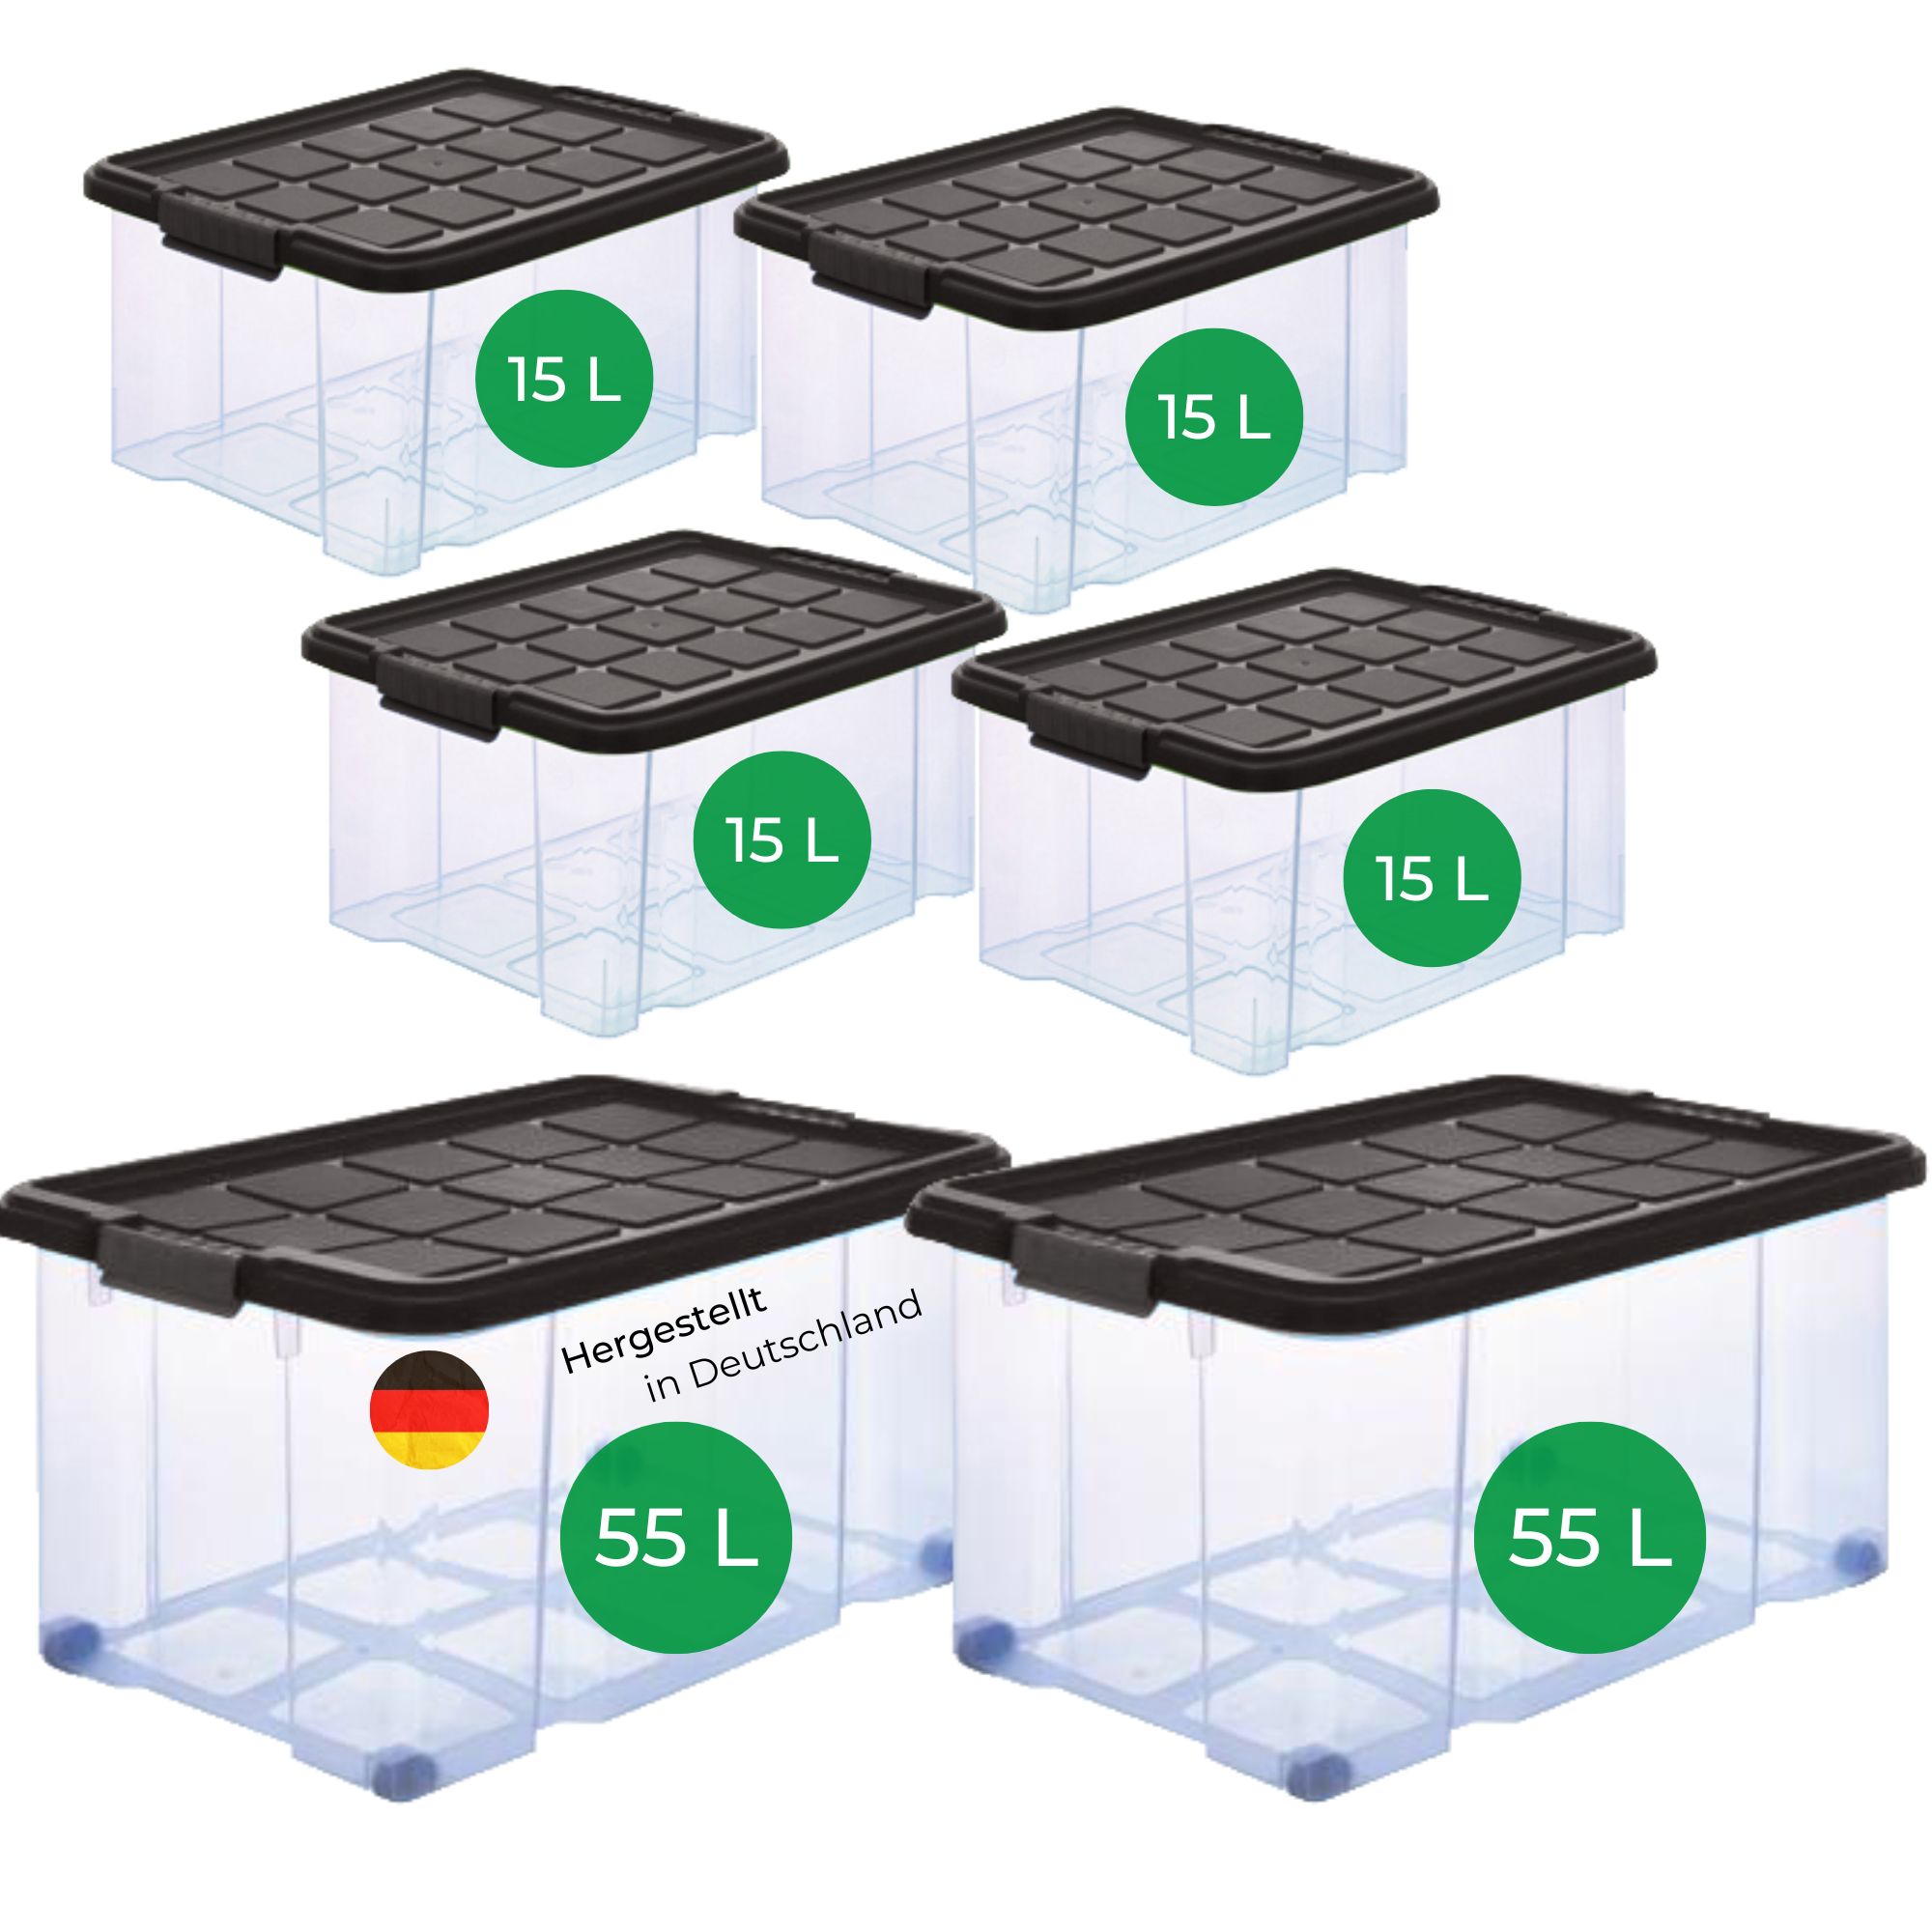 Novaliv Aufbewahrungsbox 27L - Transparente Nestbar-Plastikbox mit